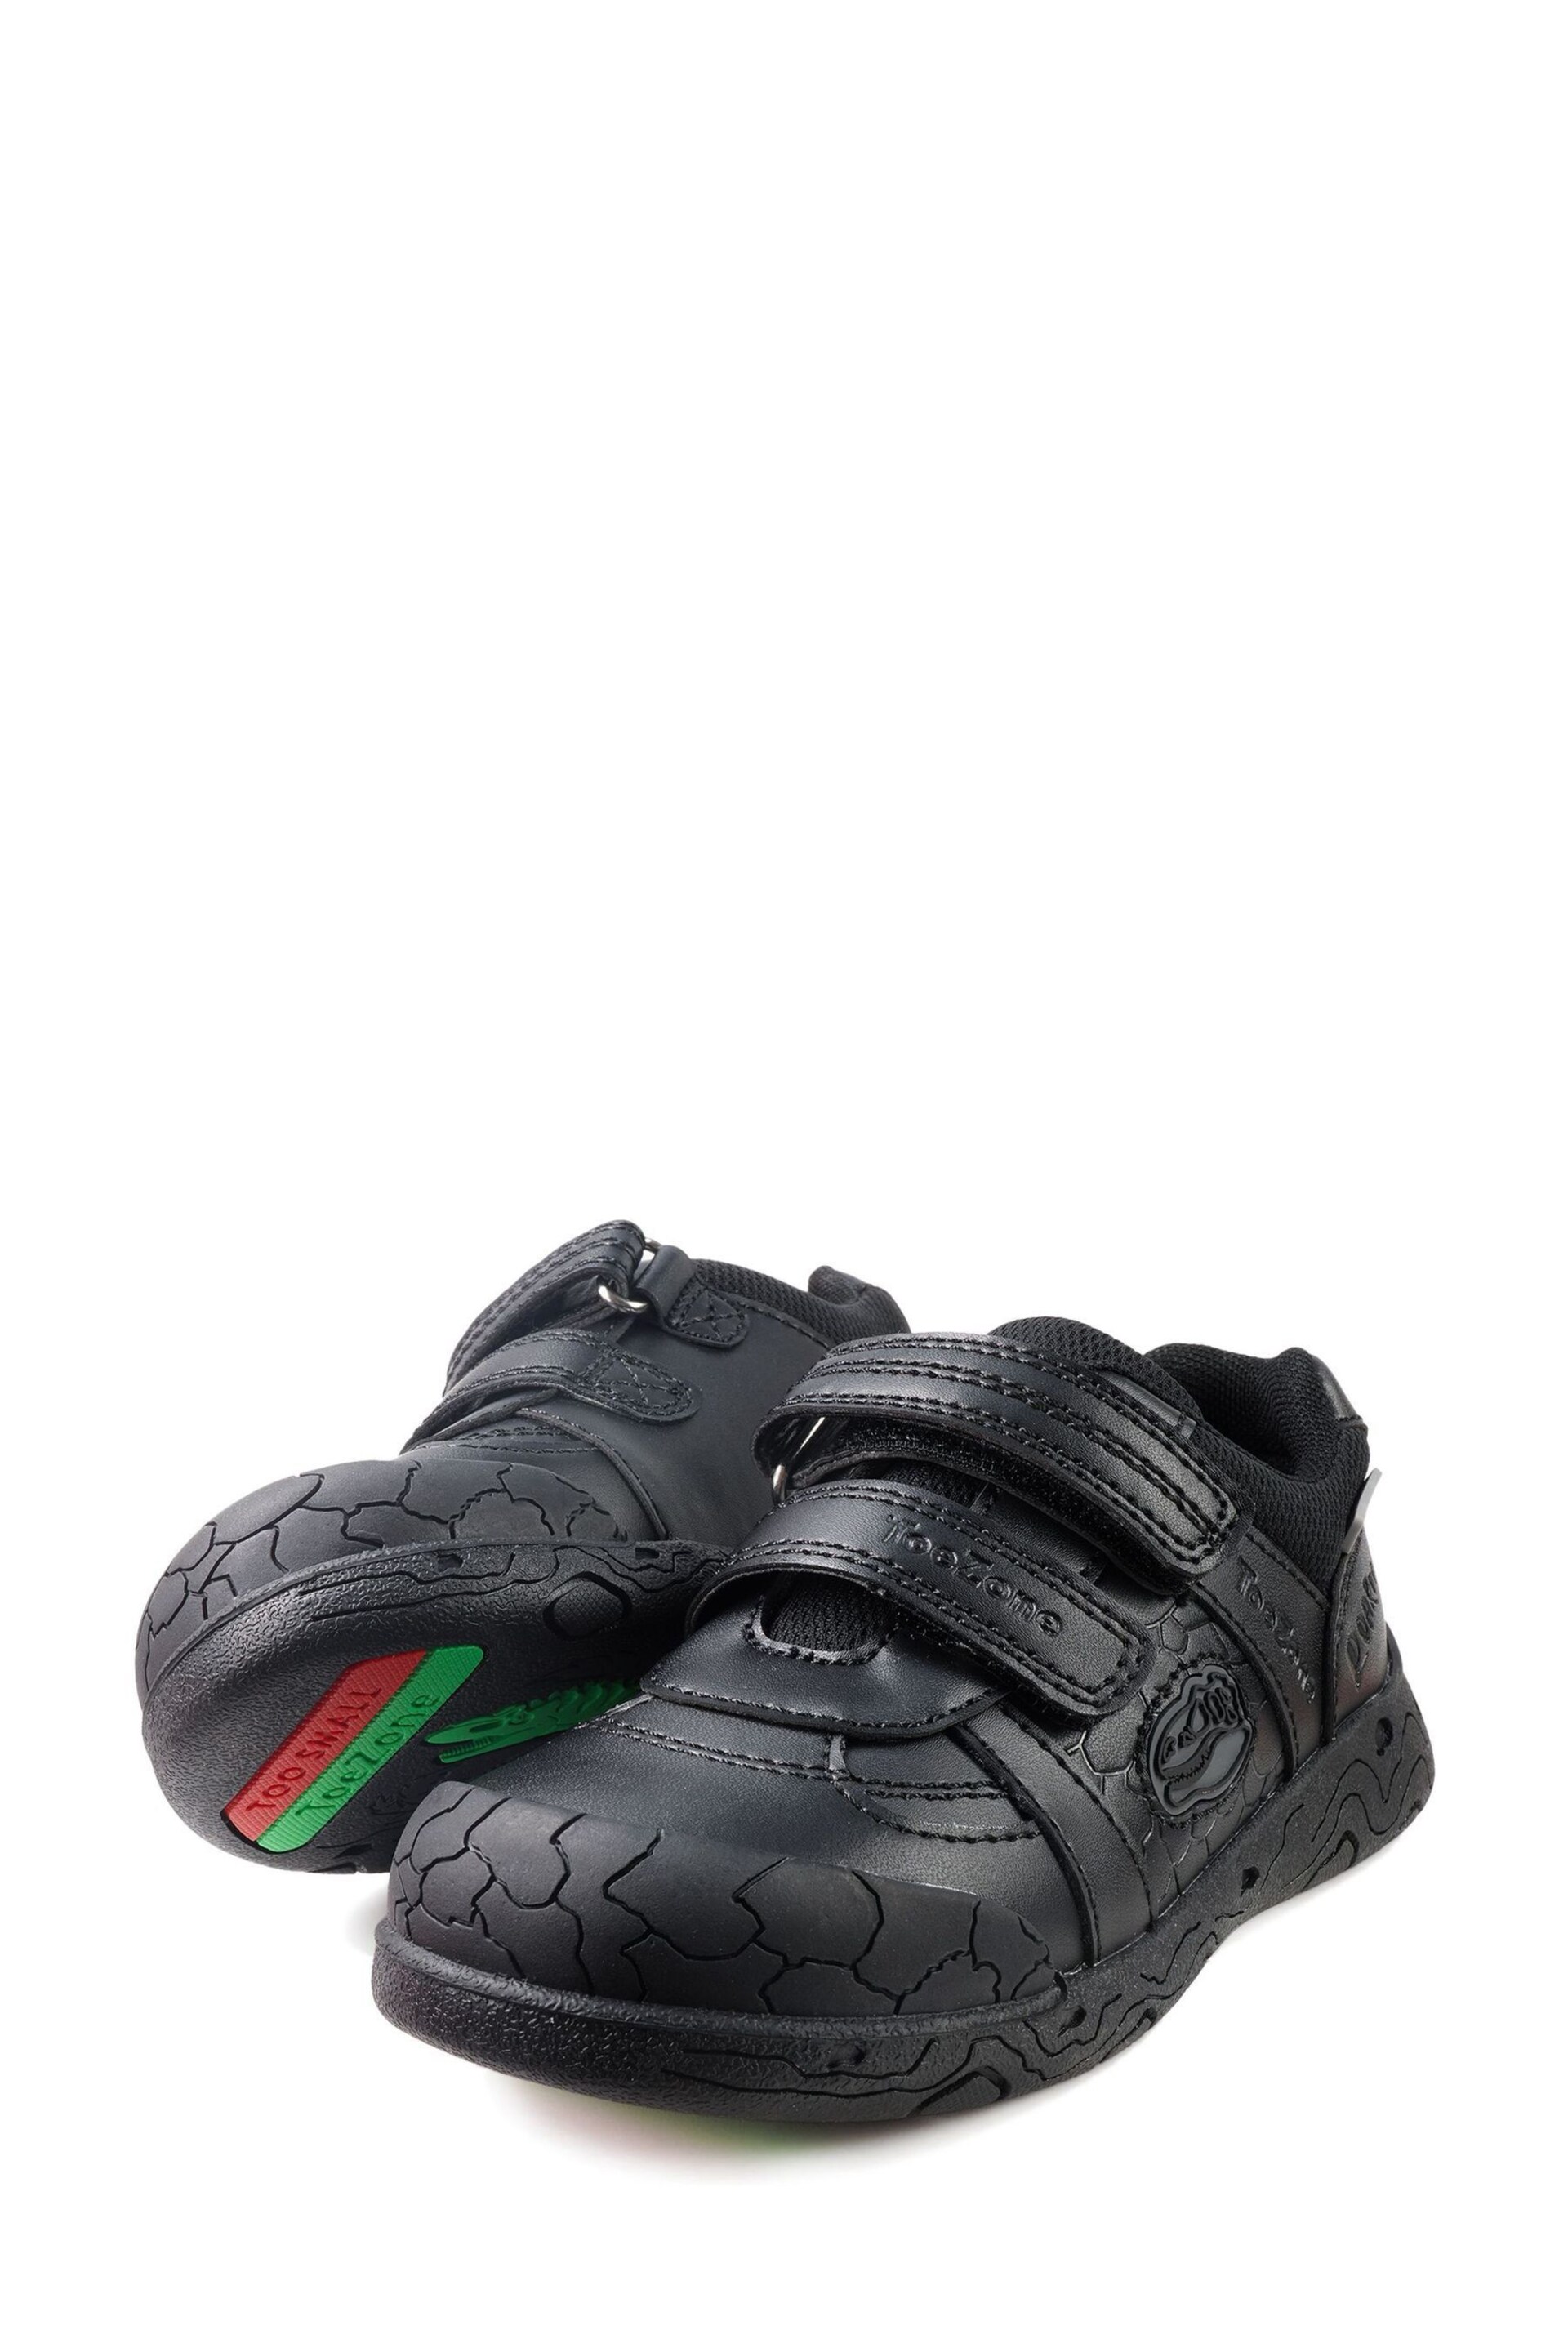 Toezone Chase Black Dinosaur Shoes - Image 3 of 6